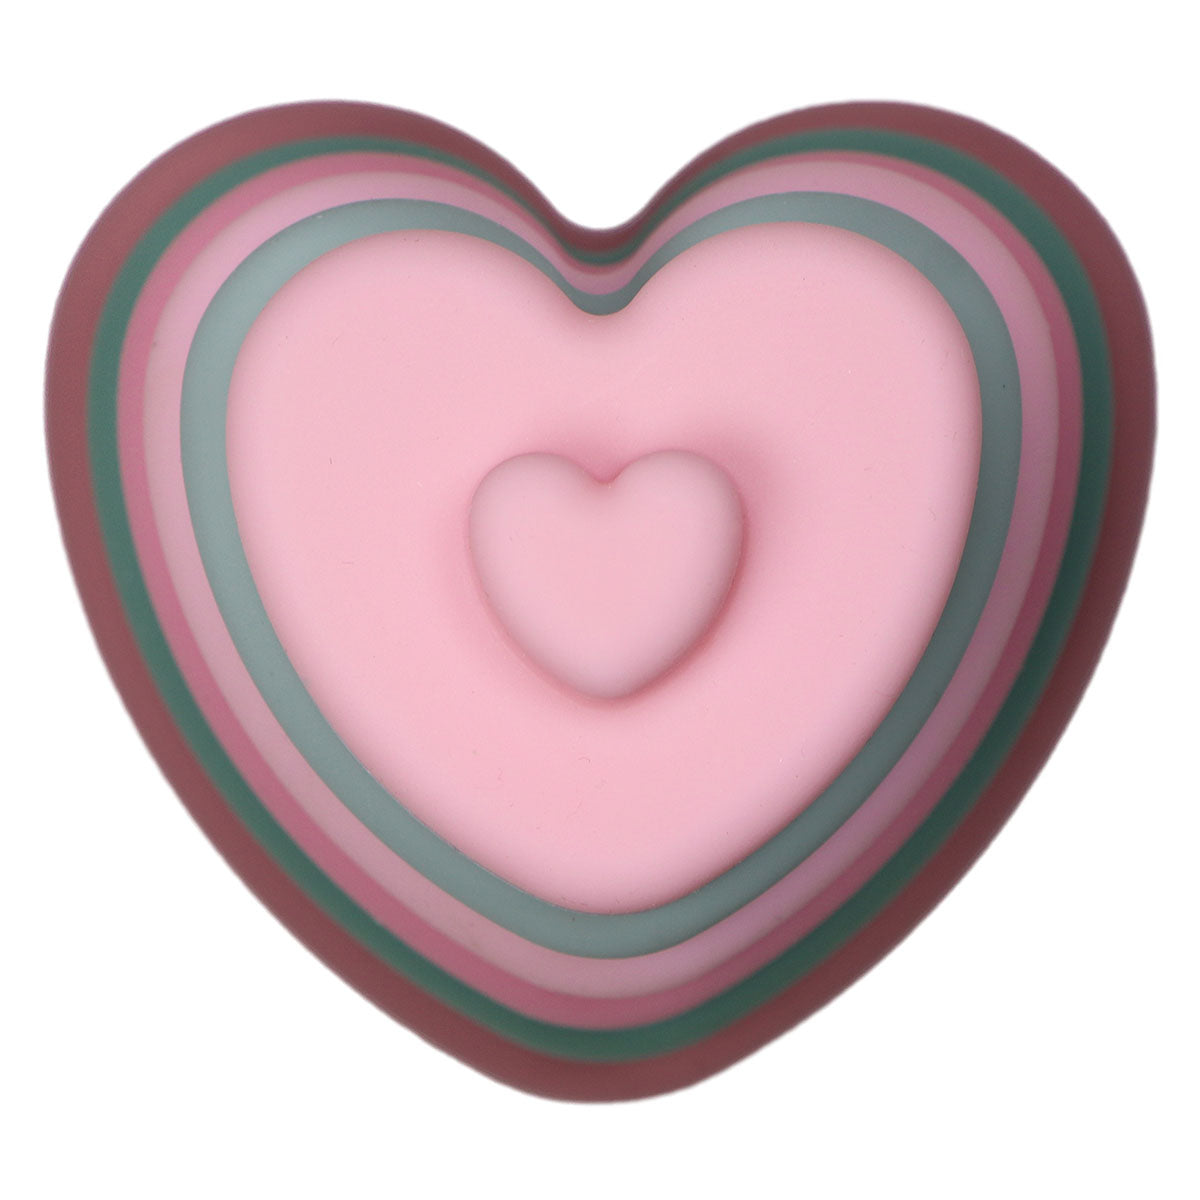 Dit is de Label Label stapelaar hart roze, een bijzondere stapelaar gemaakt van silicone. Dit maakt de stapeltoren geschikt als speelgoed vanaf de geboorte. De toren bestaat uit 6 harten in roze en groen tinten. VanZus.